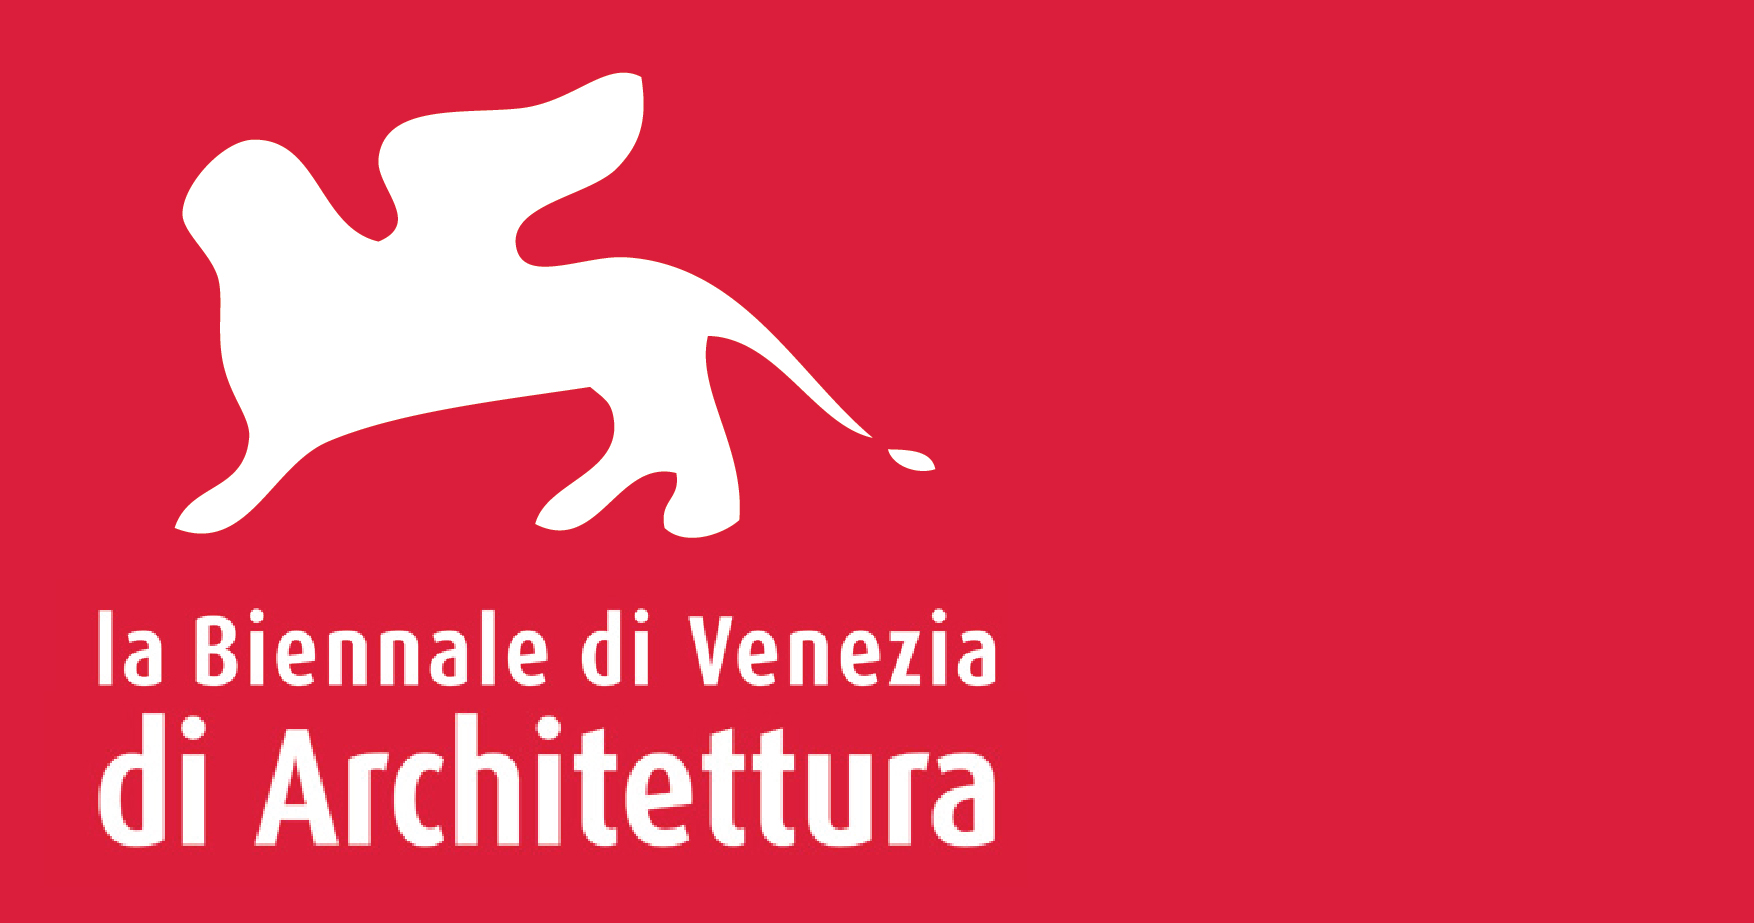 La Biennale di Venezia di Architettura